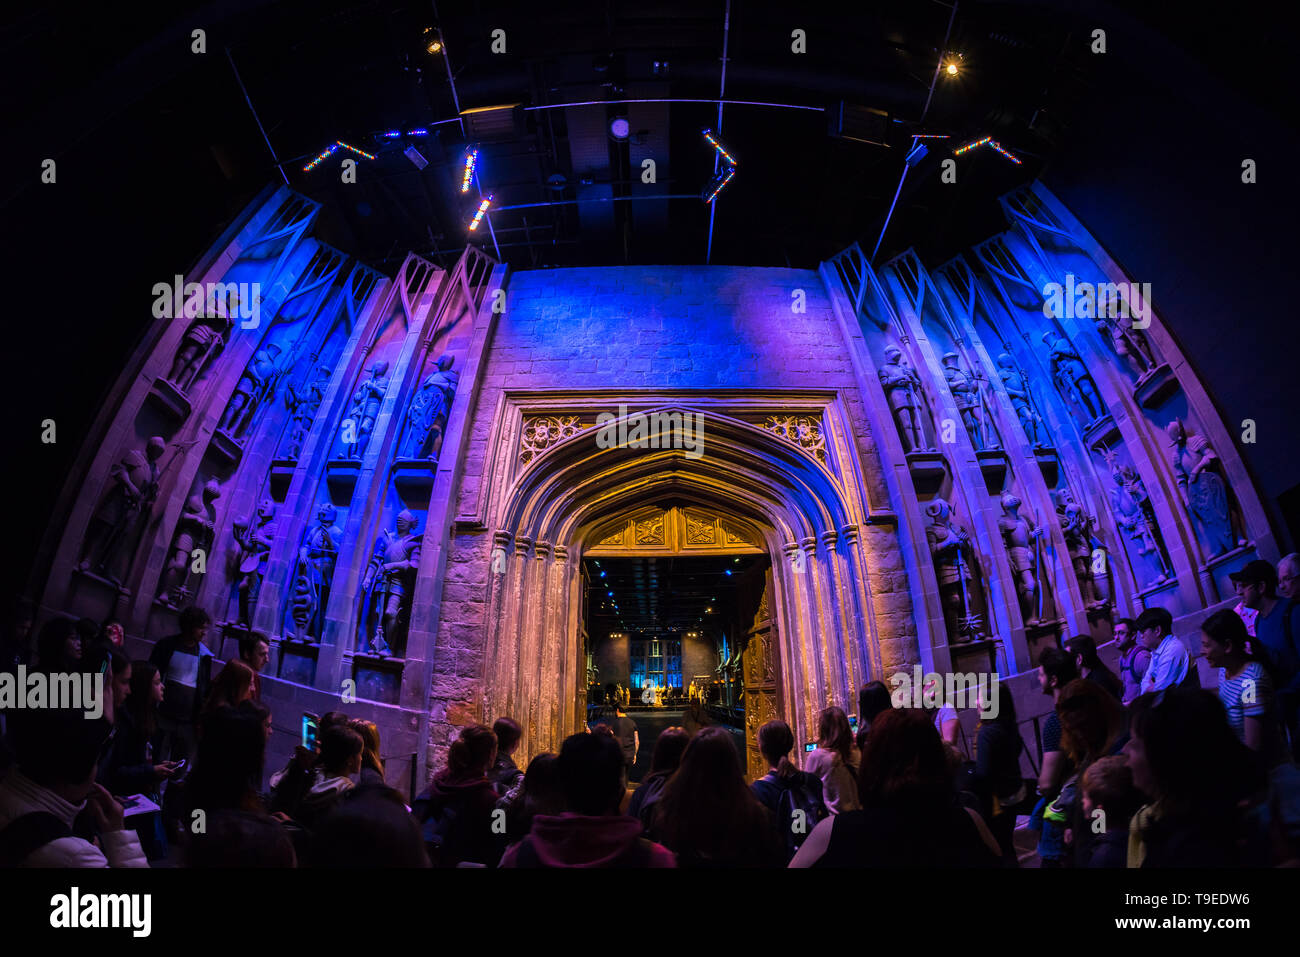 Les visiteurs qui entrent dans le Grand Hall à la Warner Bros Studio Tour 'La réalisation d'Harry Potter' Leavesden, Londres, Royaume-Uni Banque D'Images